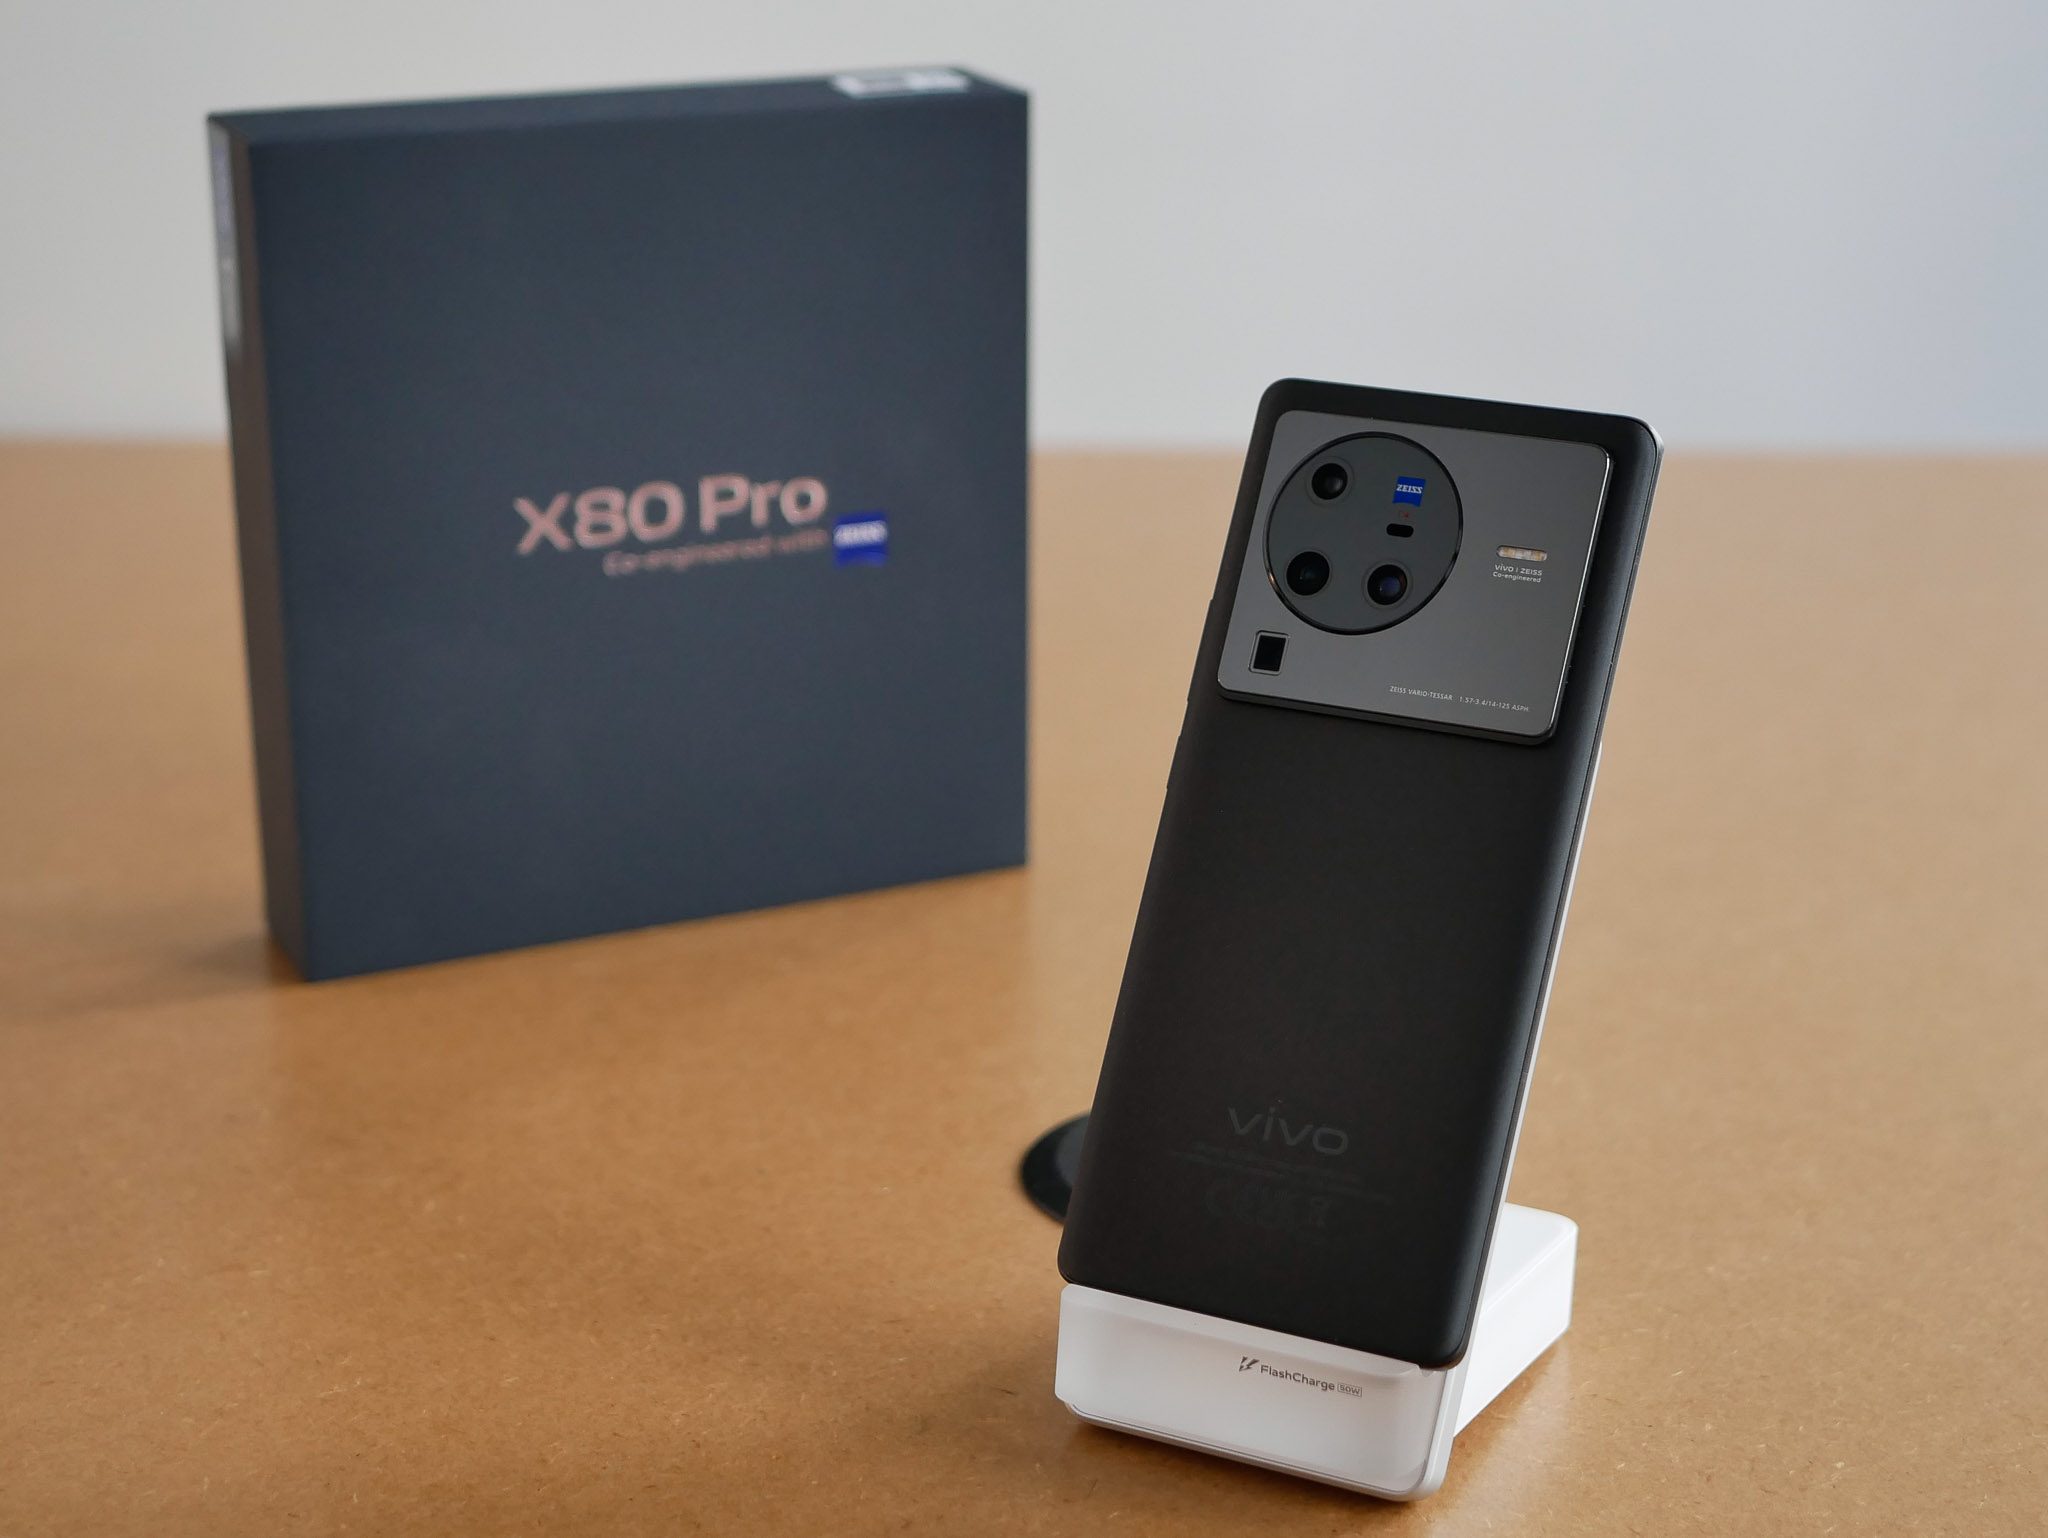 Test Vivo X80 Pro, le challenger qui nous régale